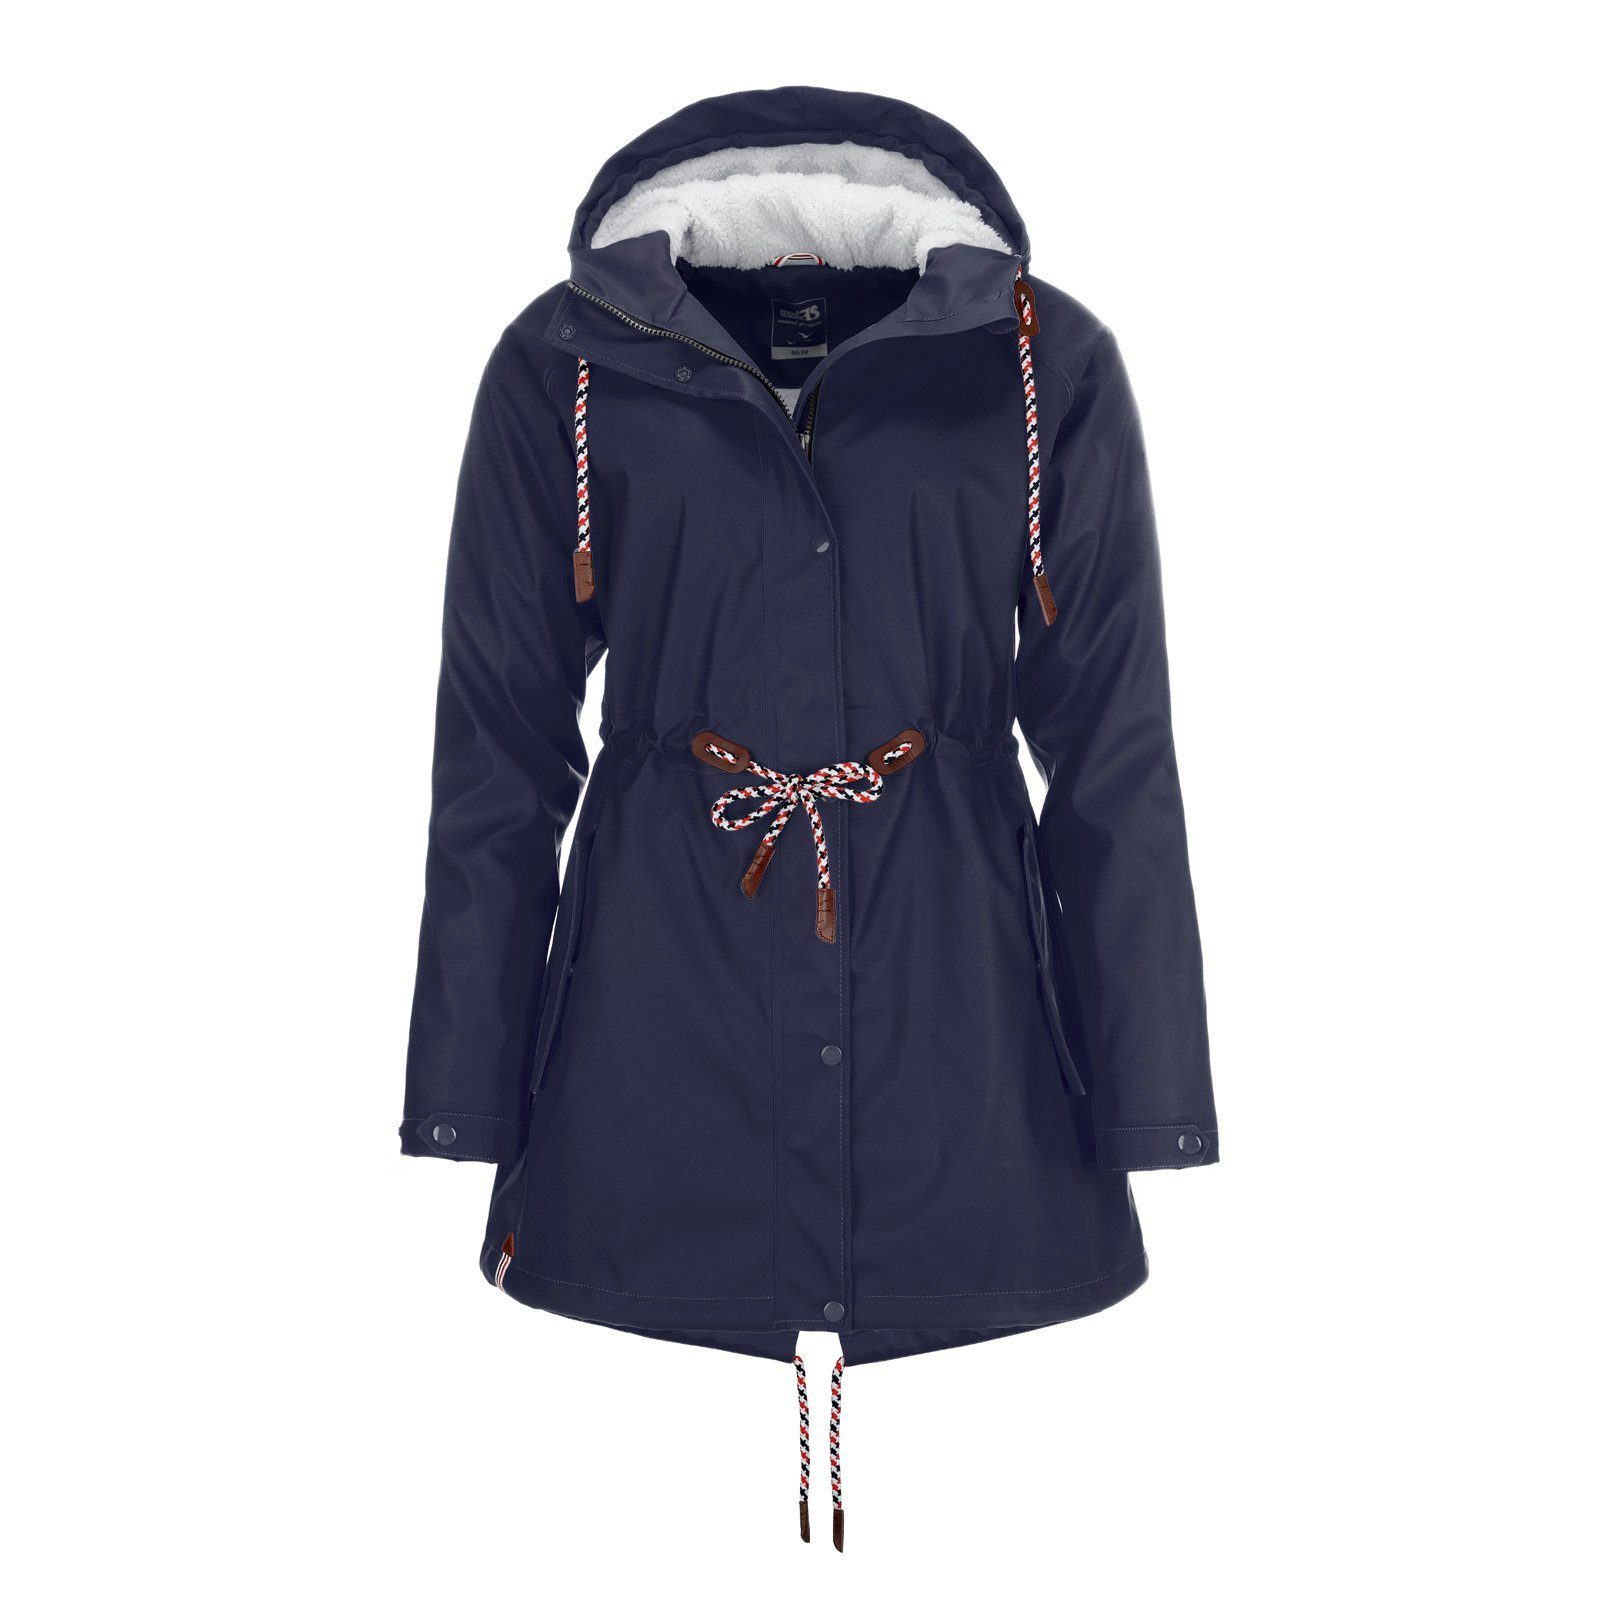 modAS Regenjacke Damen Regenmantel aus PU - Wasserdichte Jacke mit Teddy-Fleece-Futter marine | Regenjacken